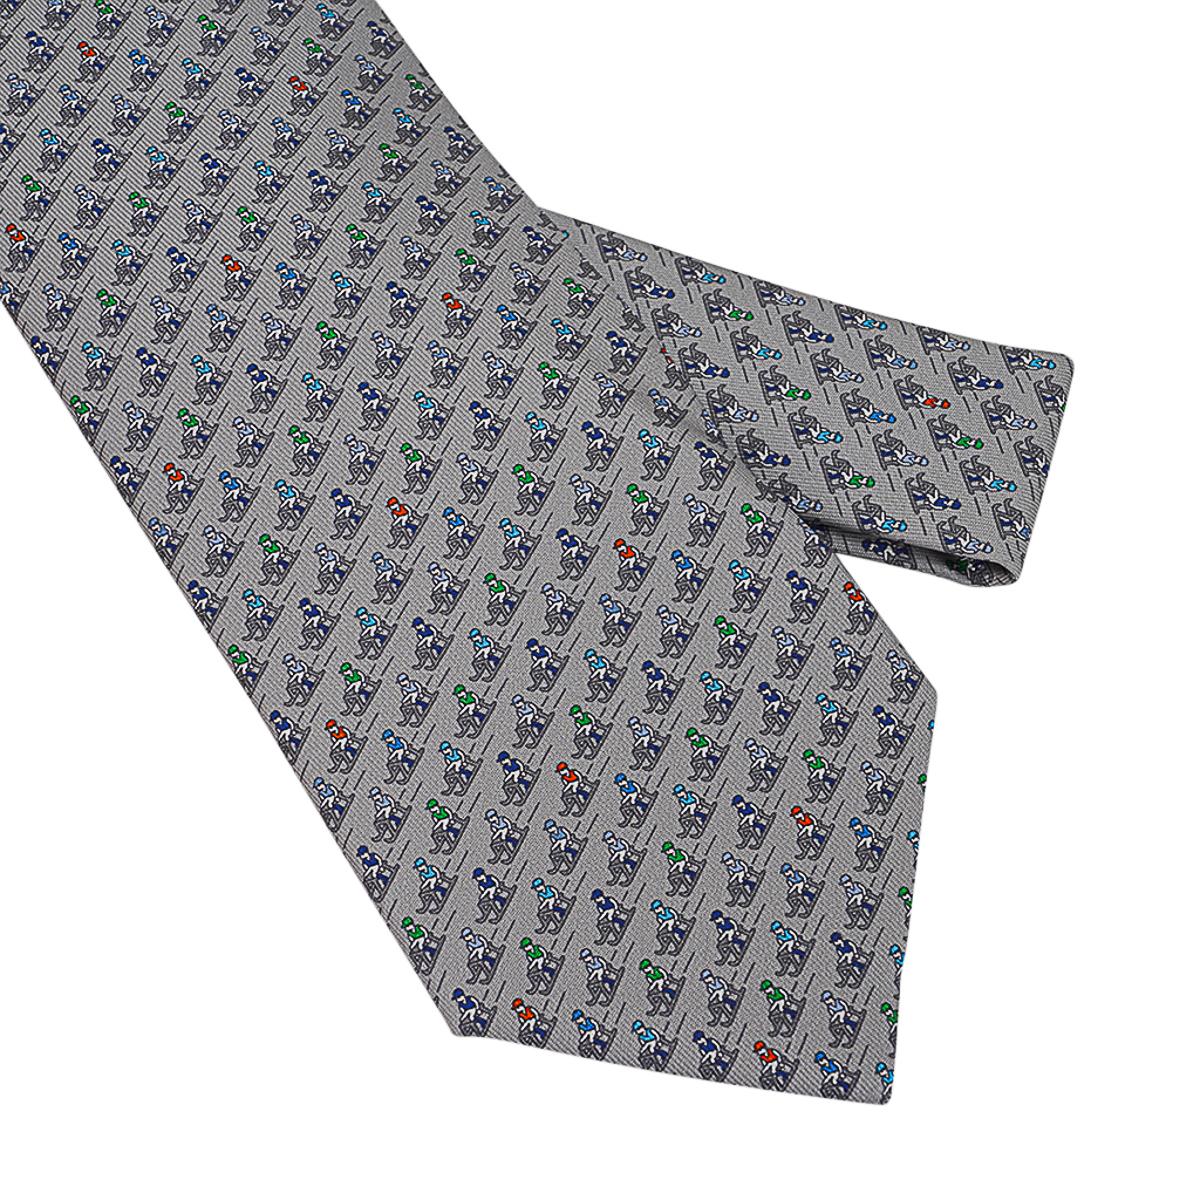 Mightychic vous propose une Cravate en soie Twillbi Sliding Jockey Hermès garantie authentique dans les coloris Gris, Anthracite et Bleu.
La queue cache le cocher d'Ex-Libris qui fait un bonhomme de neige et les jockeys qui descendent en luge